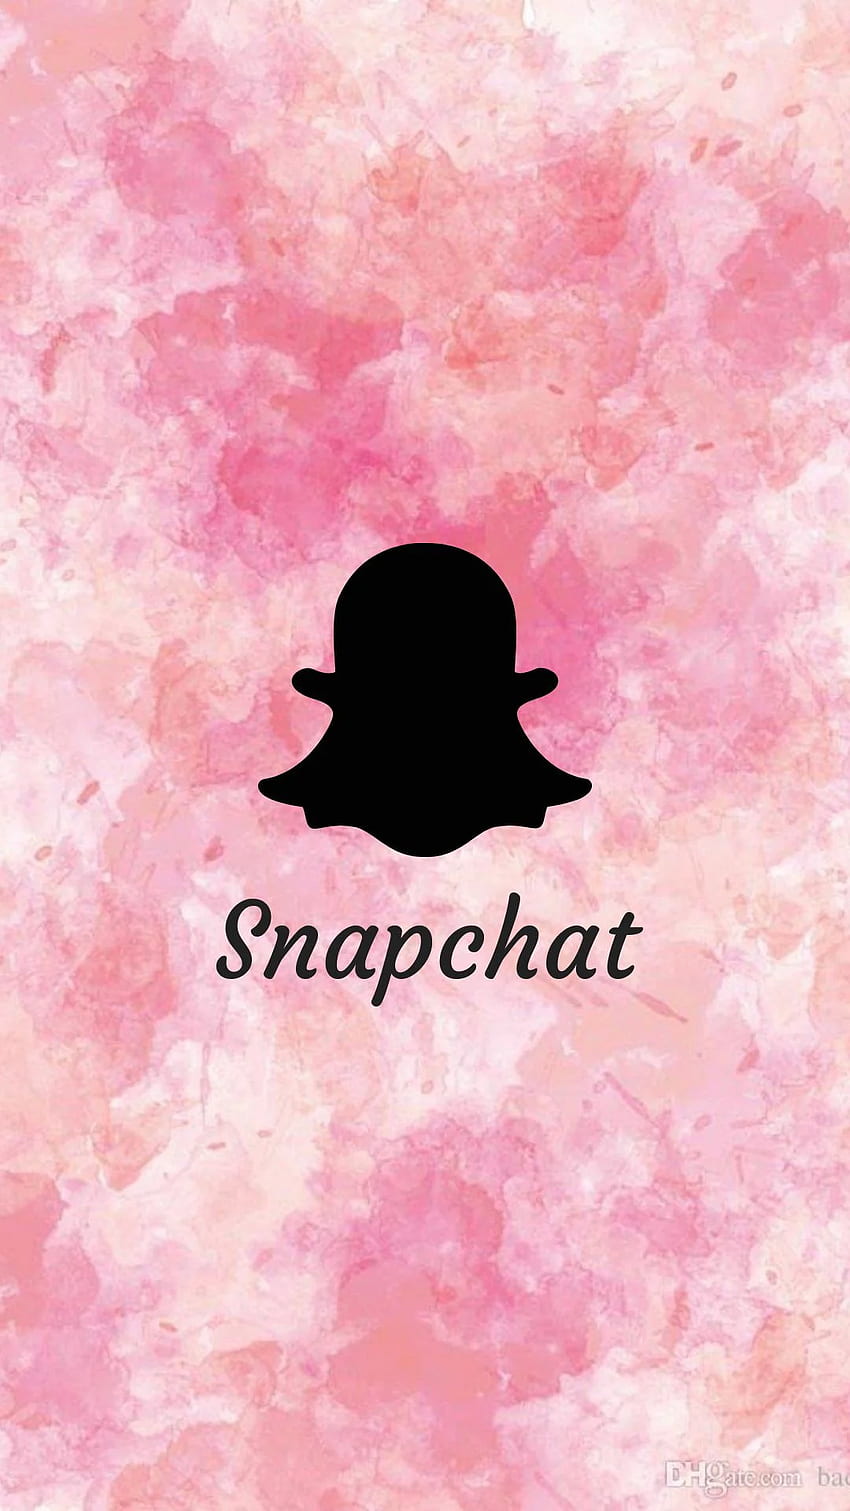 Instagram Highlight Cover - Snapchat  Instagram icons, Instagram highlight  icons, Instagram photo